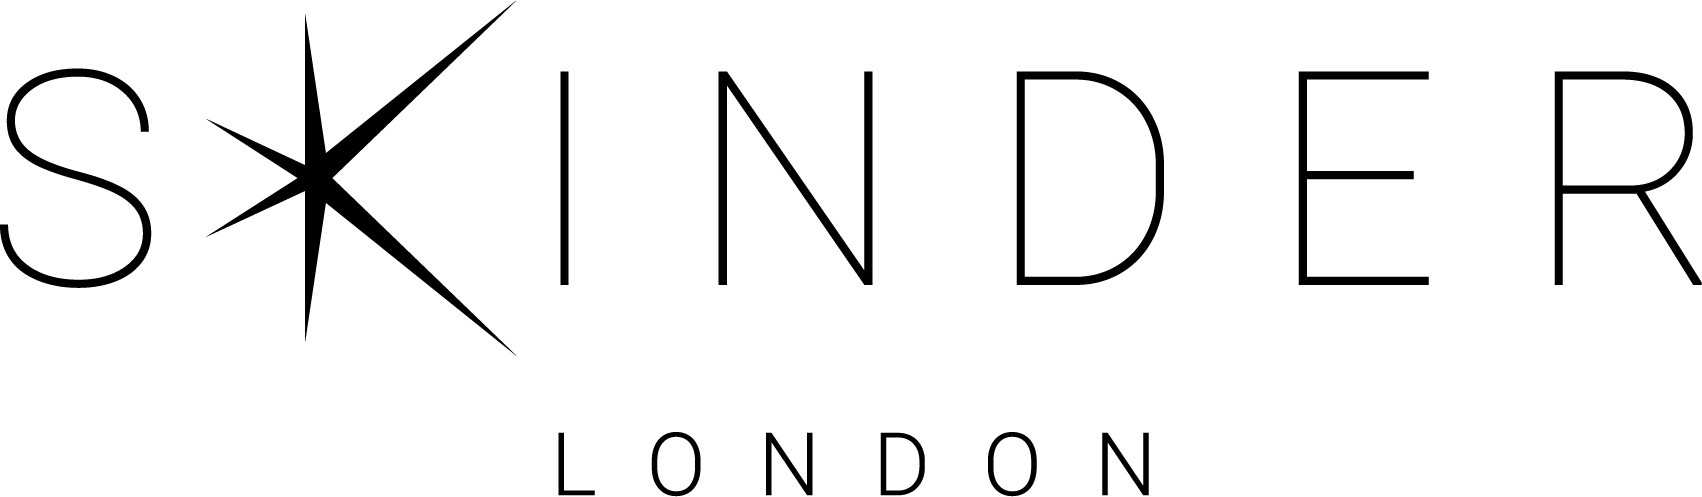 logo for SKINDER